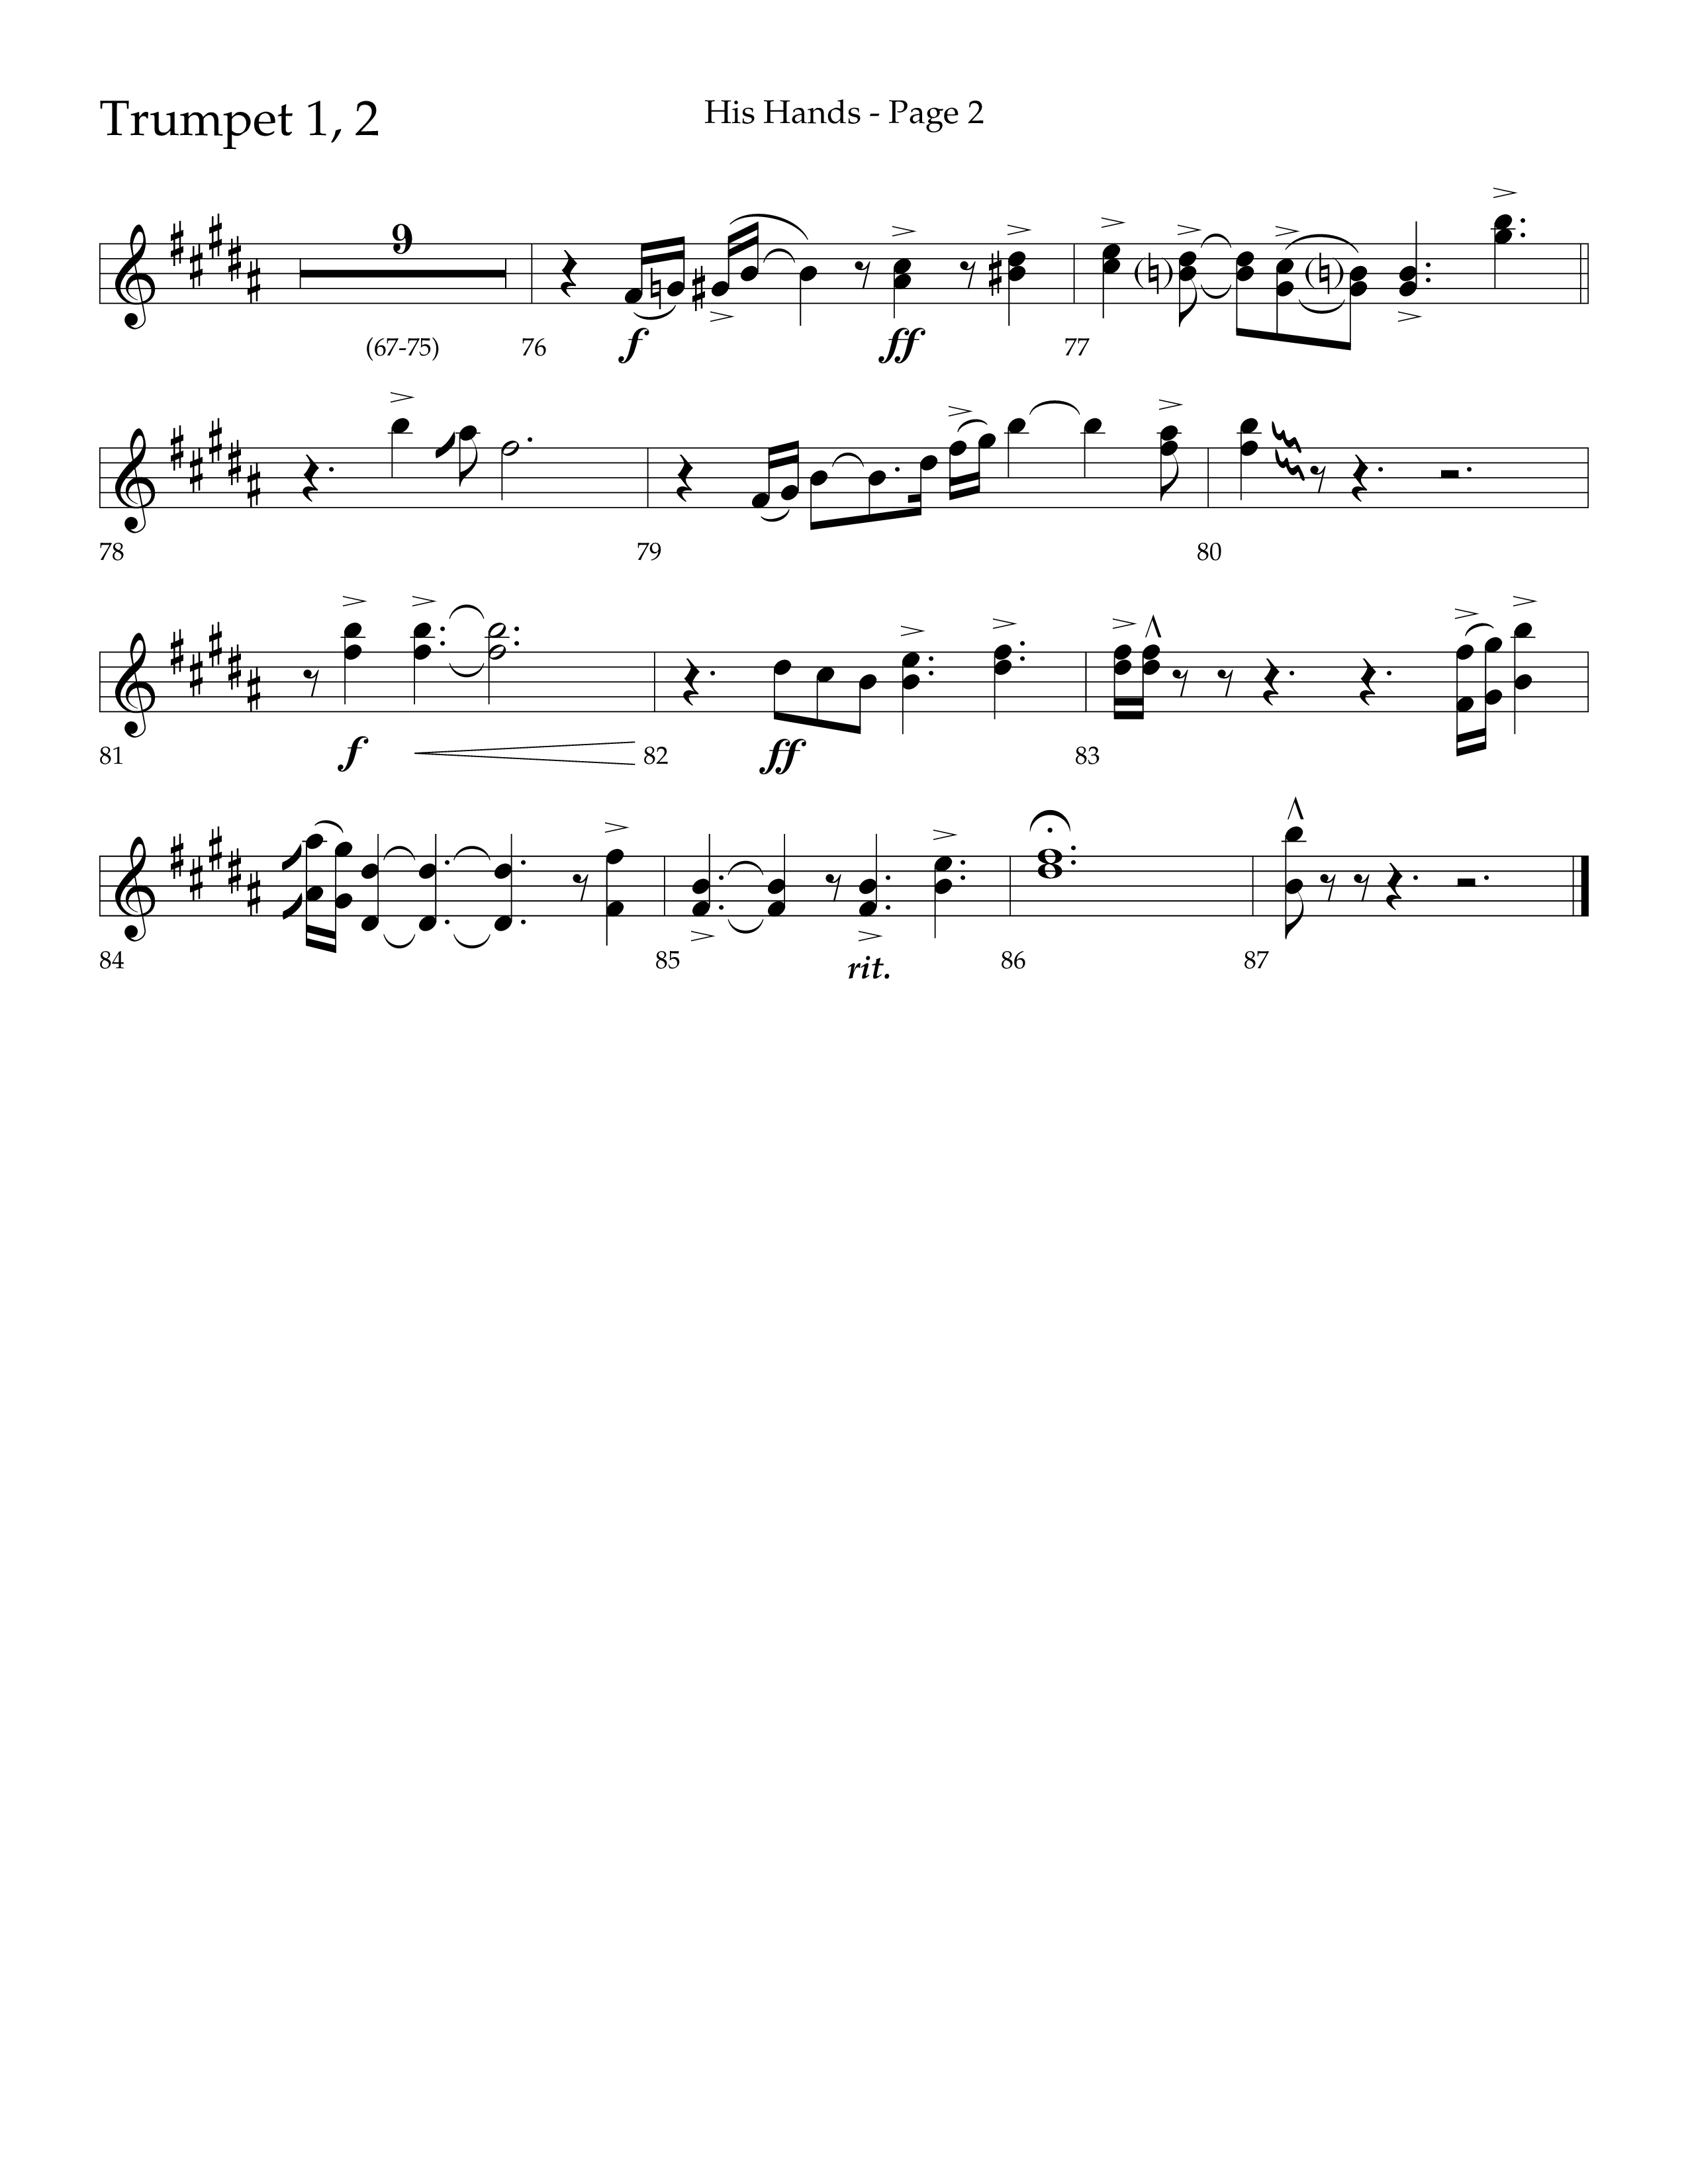 His Hands (Choral Anthem SATB) Trumpet 1,2 (Lifeway Choral / Arr. Cliff Duren)